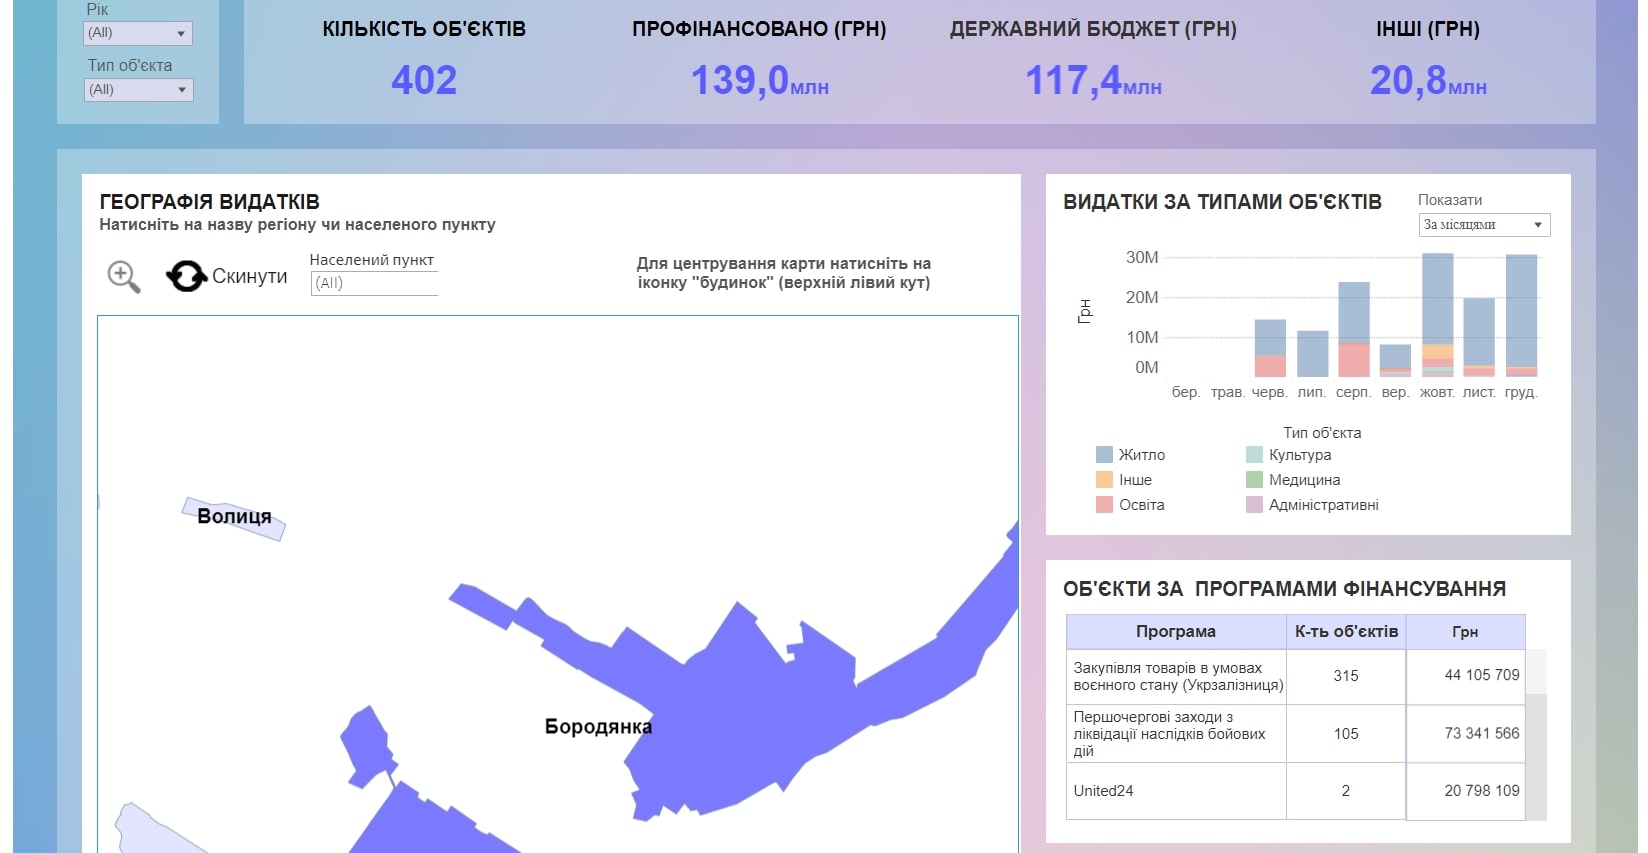 Інтерактивна мапа відбудови Київщини